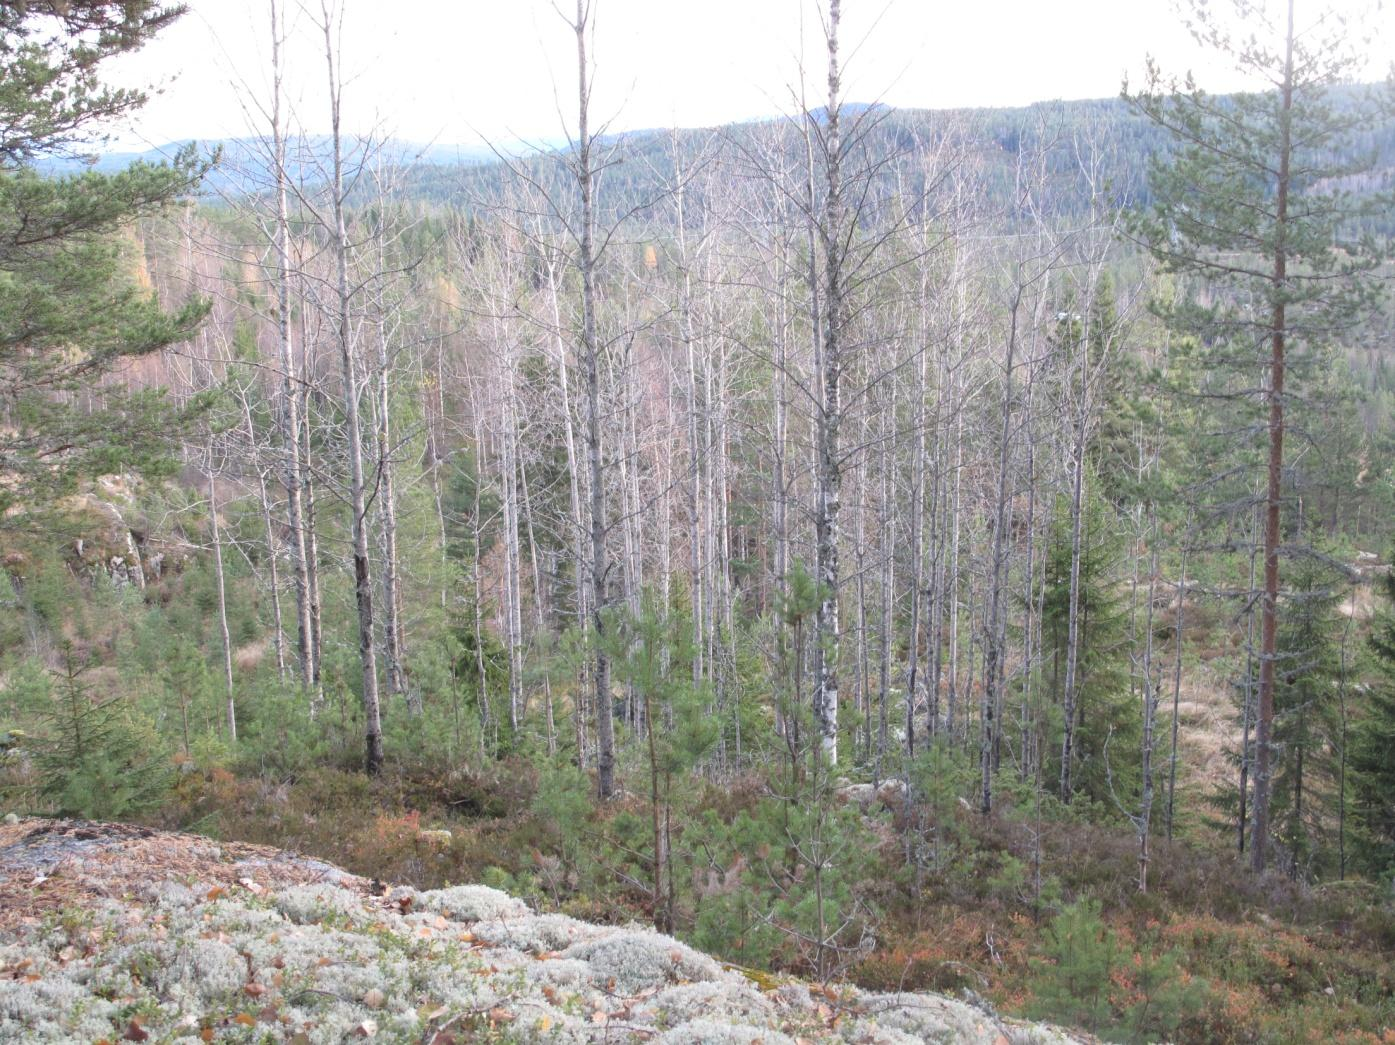 Figur 11. I kanten av og utenfor tilbudt areal, har det etter hogst kommet opp yngre ospeskog. Slik skog er viktig å bevare for å langsiktig bevare ospetilknytta arter over tid.